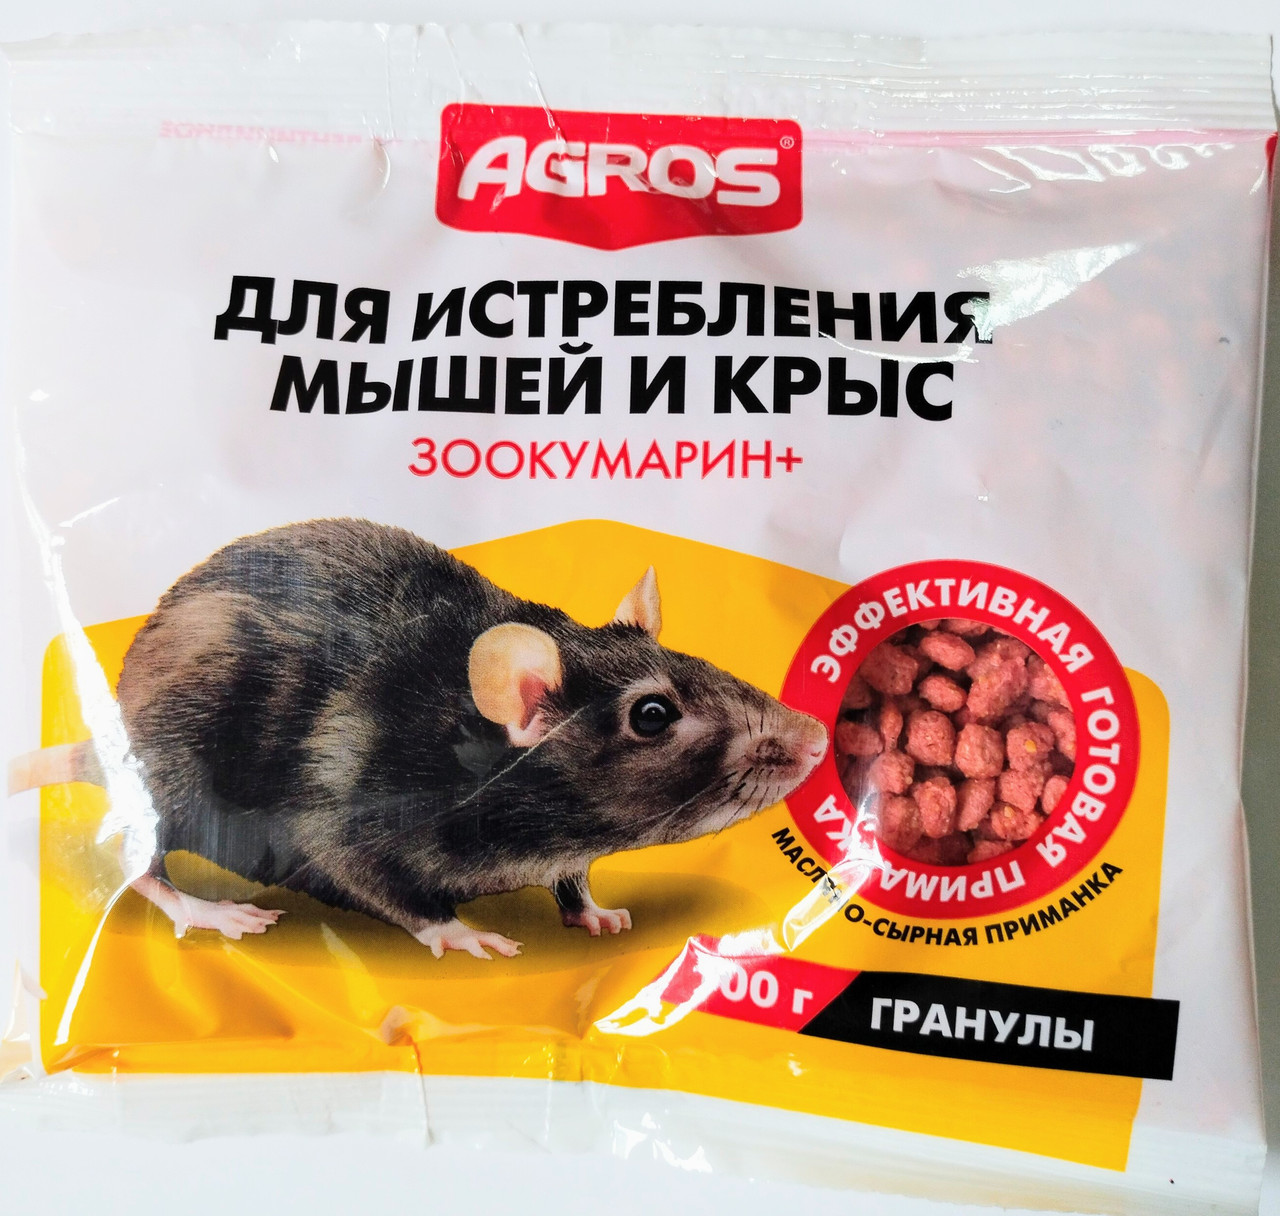 Гранулы для истребления мышей и крыс, сырные. 100г Agros  ООО "Факториал", РФ